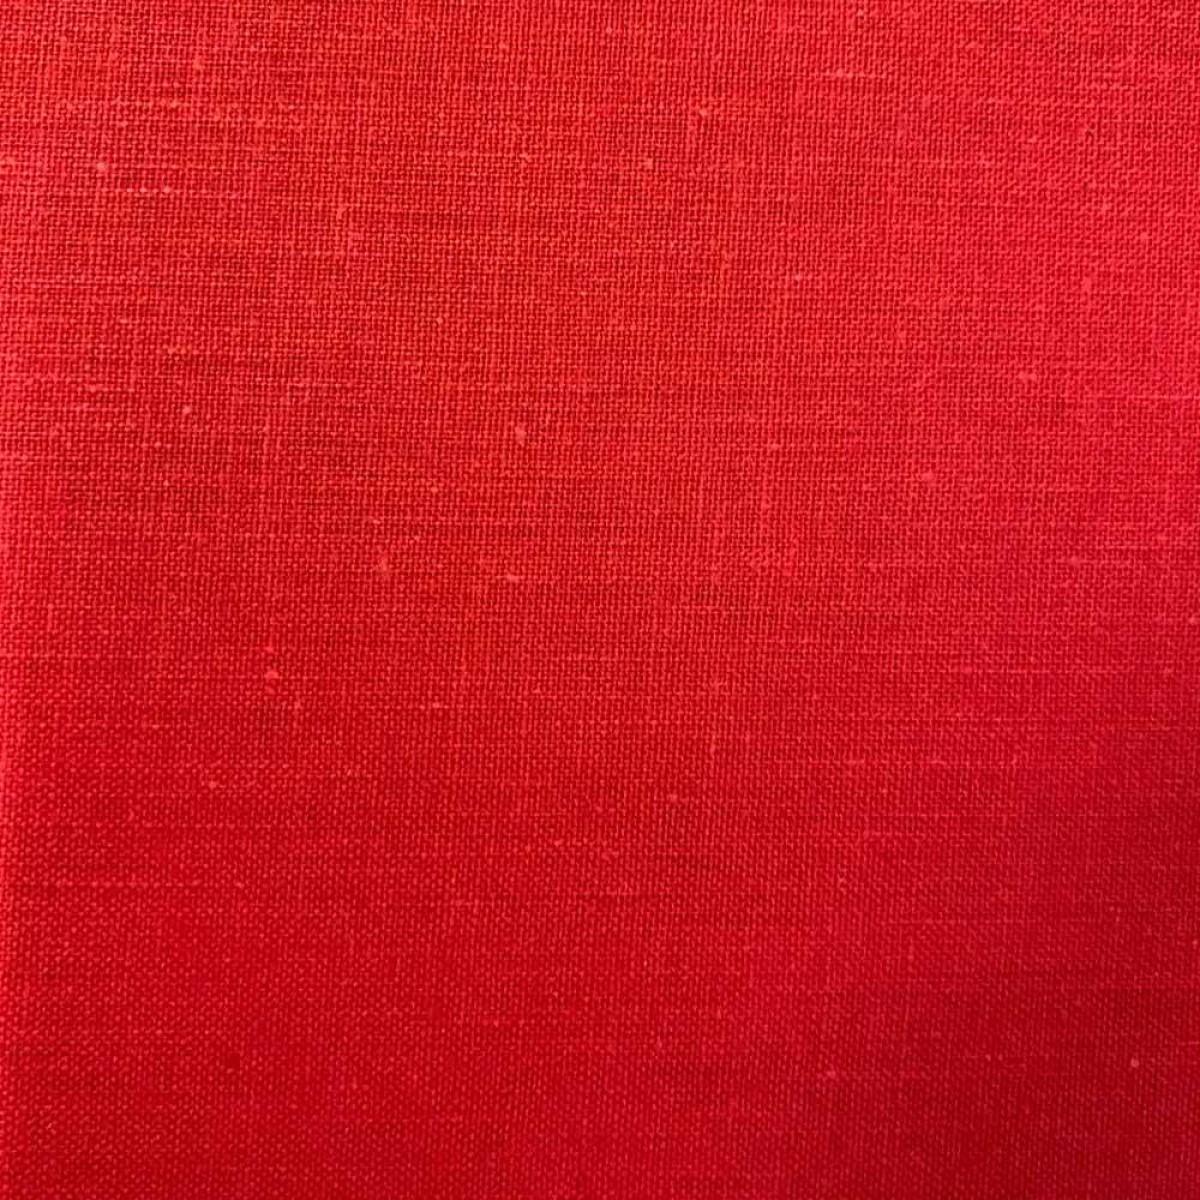 Σεντόνι χωρίς λάστιχο polycotton μονό 160x250cm κόκκινο χρώμα TNS 39-958-0428